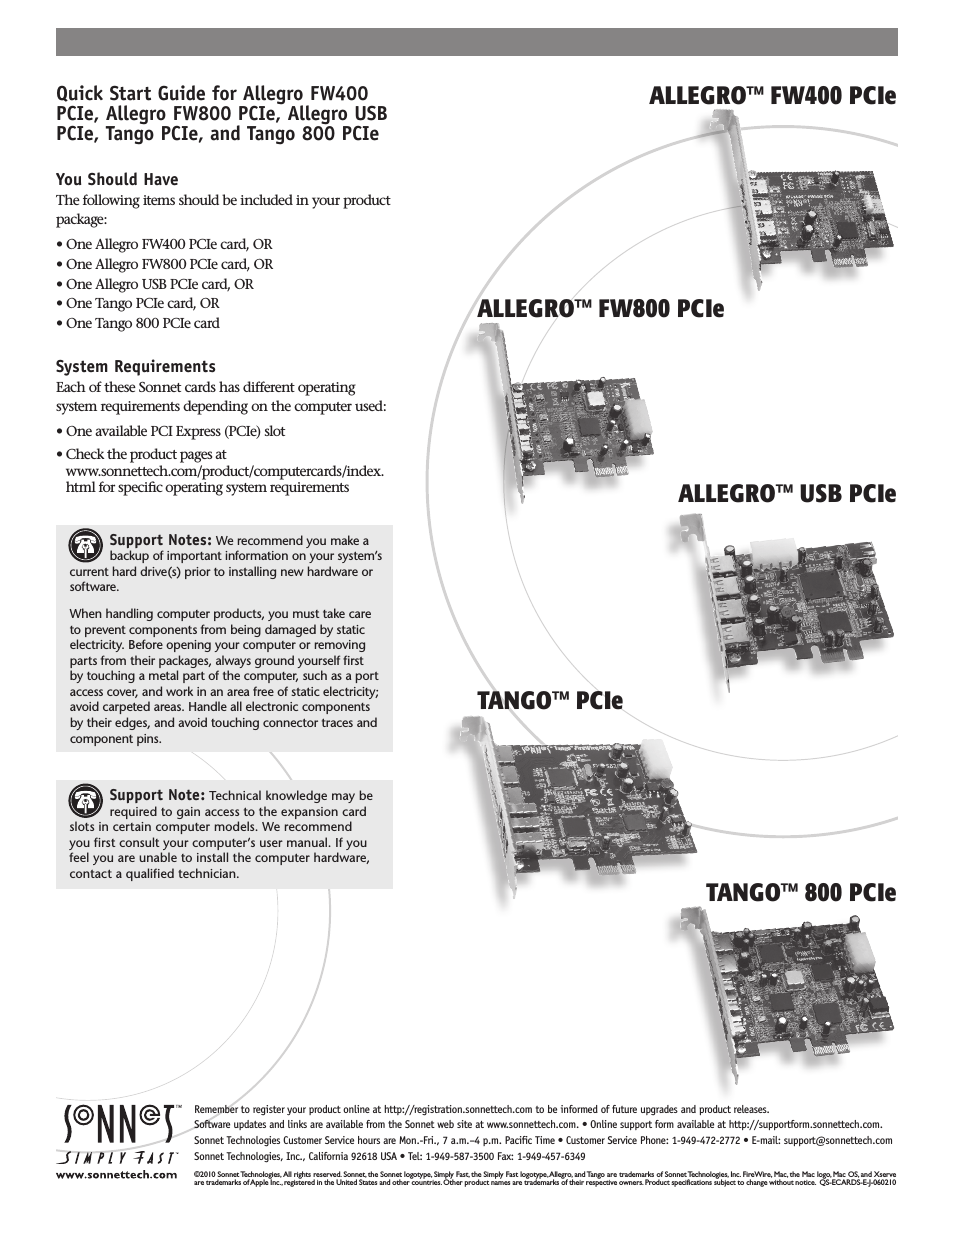 Allegro FW800 PCIe